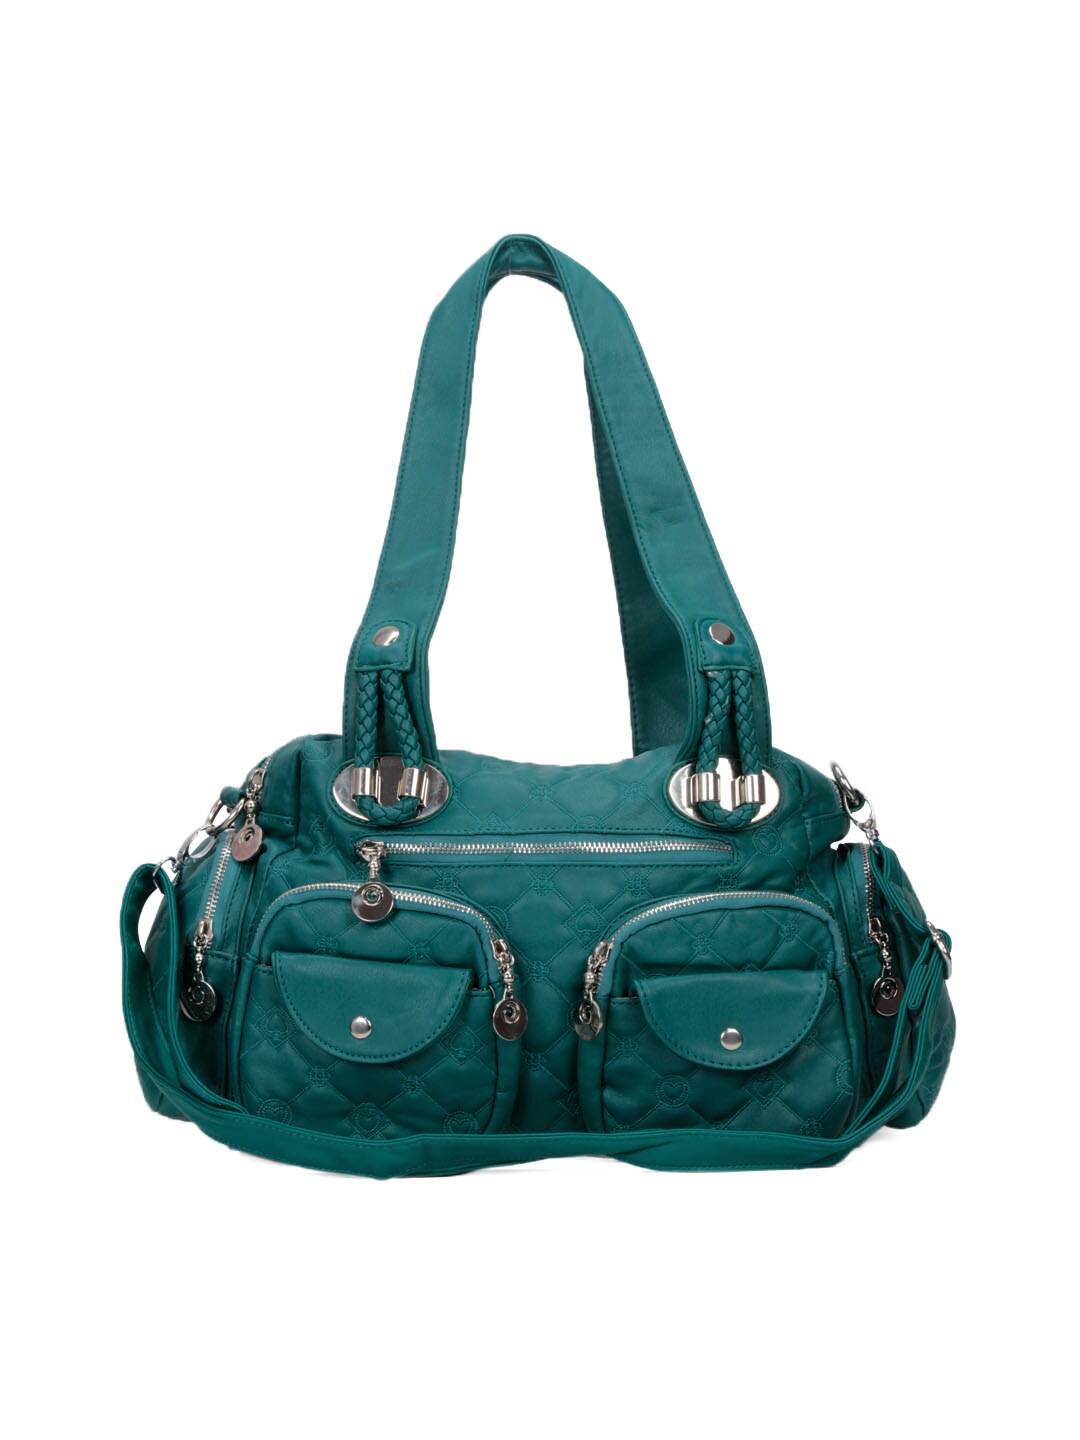 Kiara Women Leatherette Teal Handbag